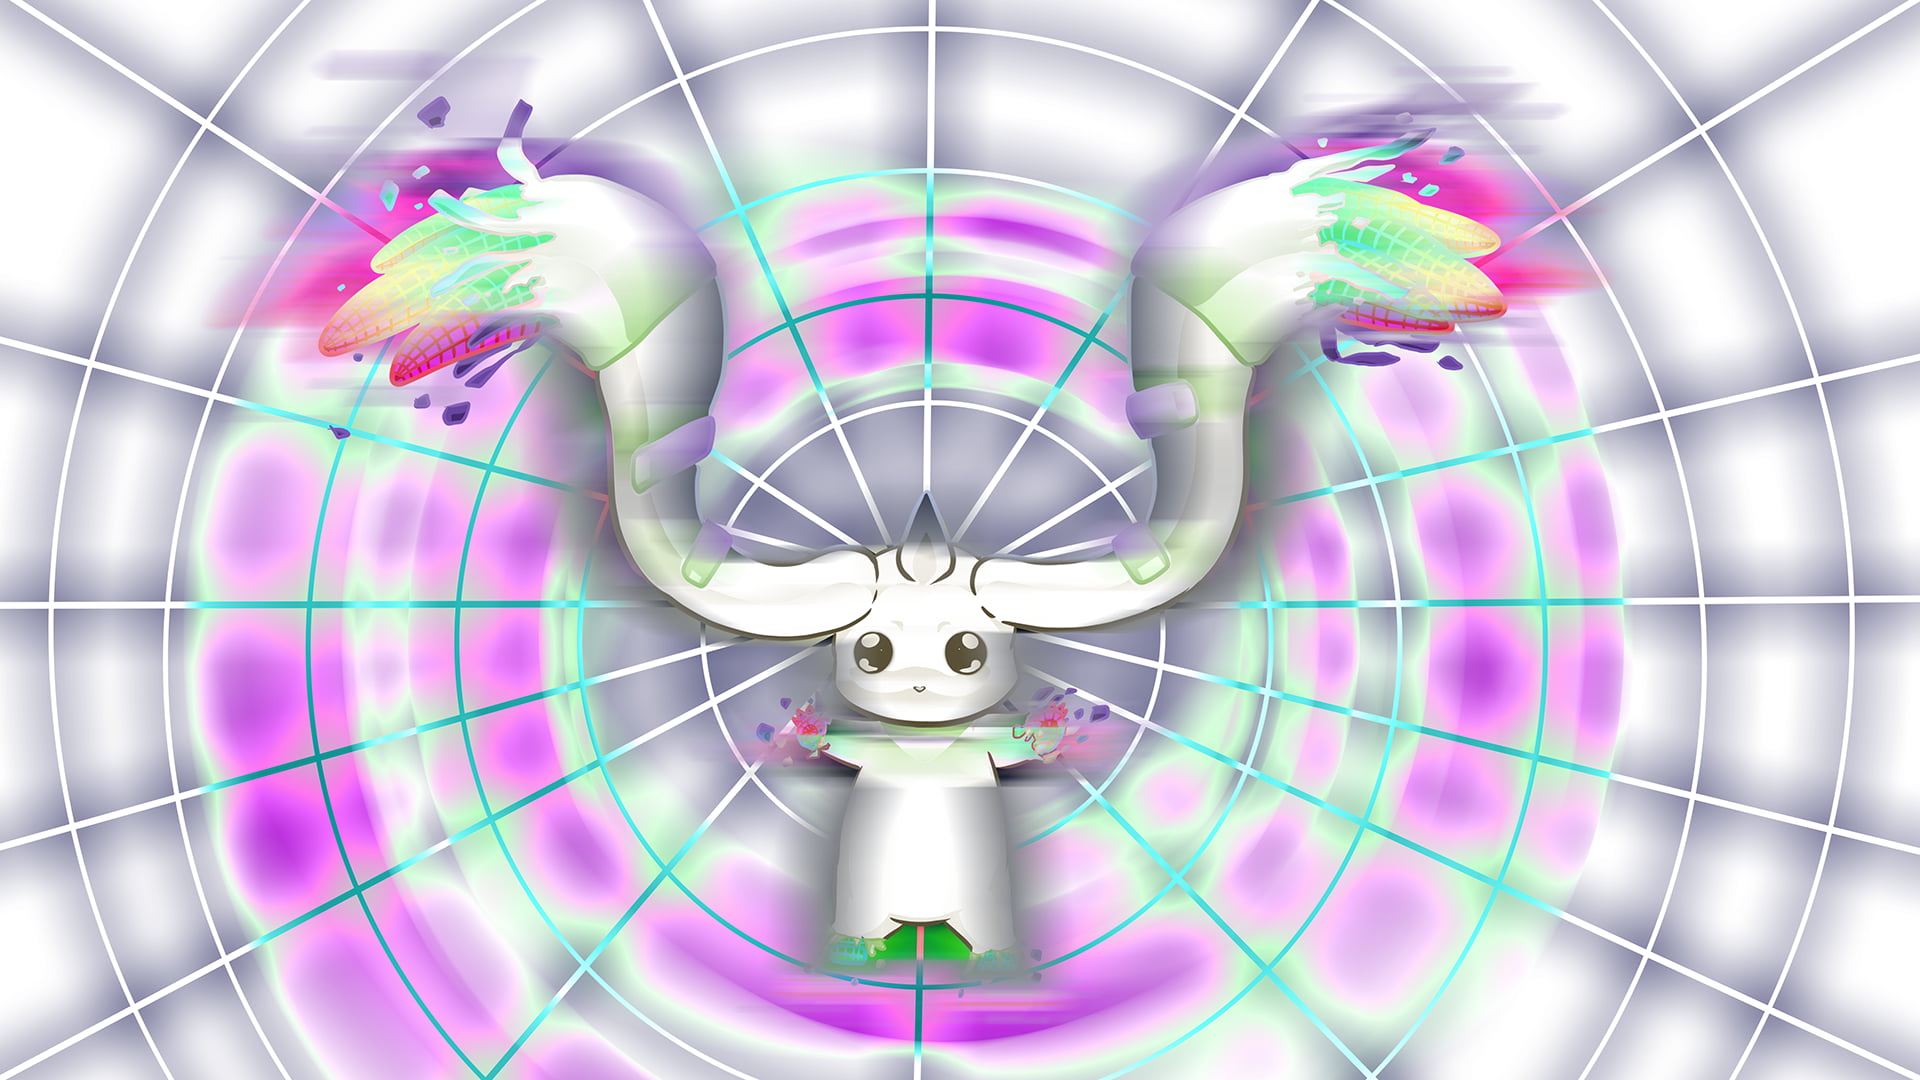 white and purple desk fan, terriermon, Digimon Adventure, digivolve, imalune